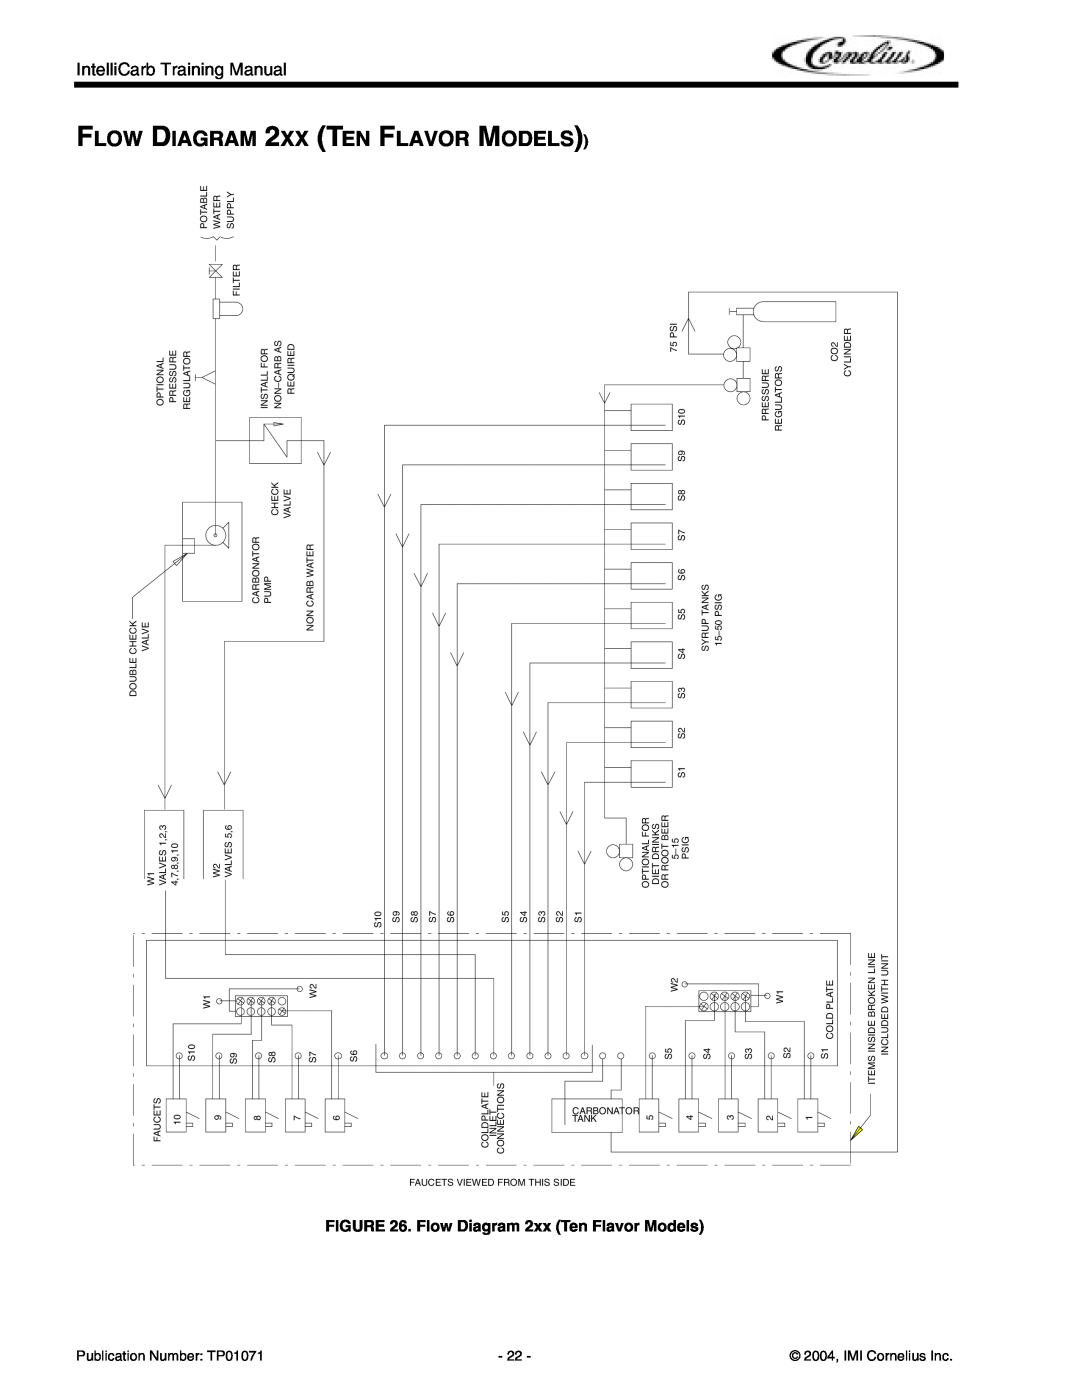 Cornelius Cold Beverage Dispenser manual FLOW DIAGRAM 2XX TEN FLAVOR MODELS, Flow Diagram 2xx Ten Flavor Models 